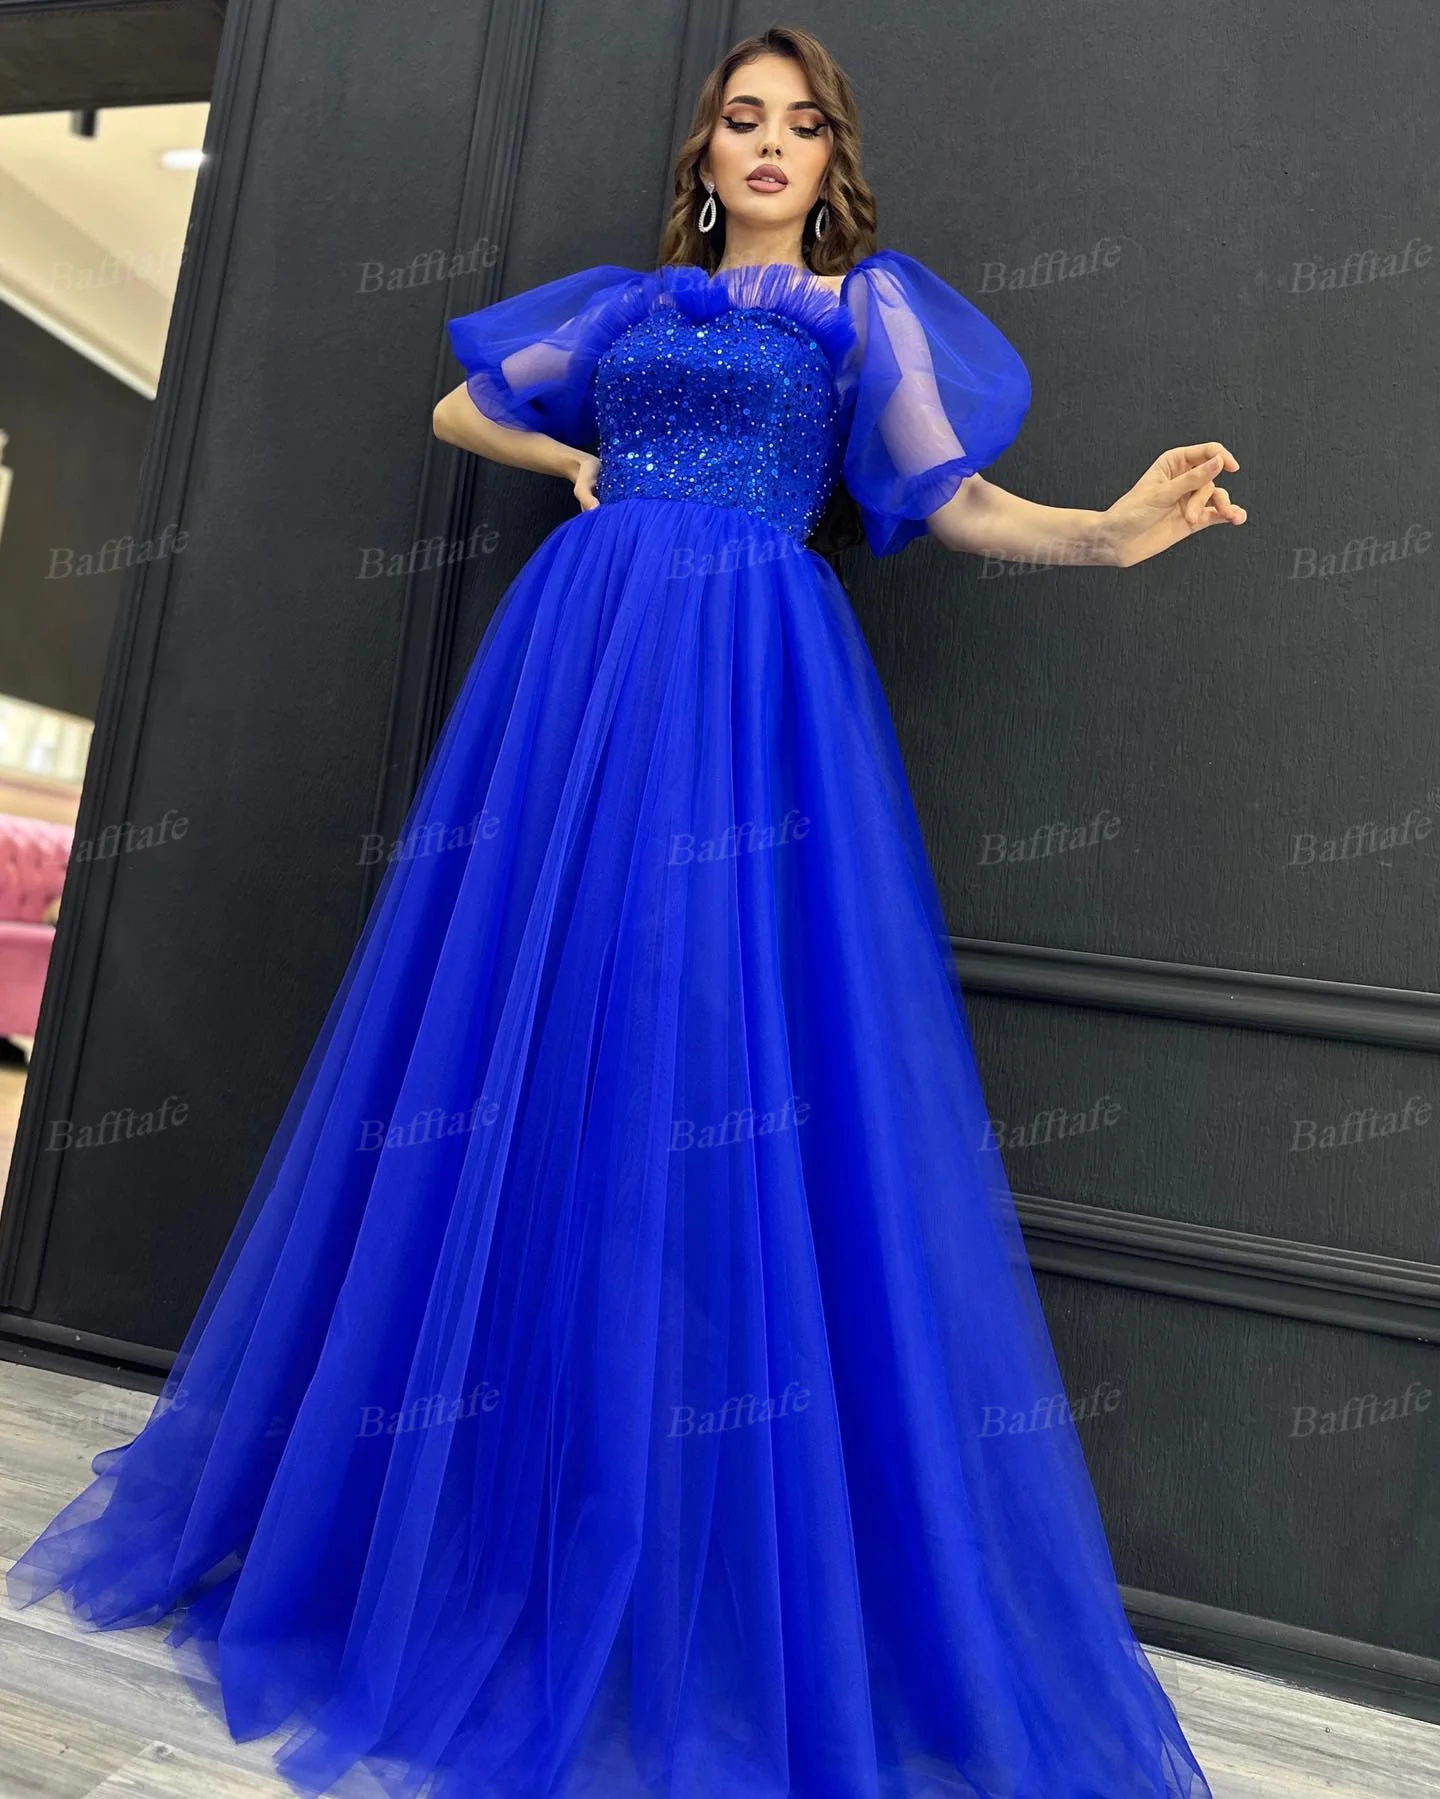 Bafftafe Royal Blue Трапециевидные тюлевые женские платья для выпускного вечера, специальные платья с короткими рукавами, расшитое бисером Арабское длинное вечернее платье для вечеринки Изображение 1